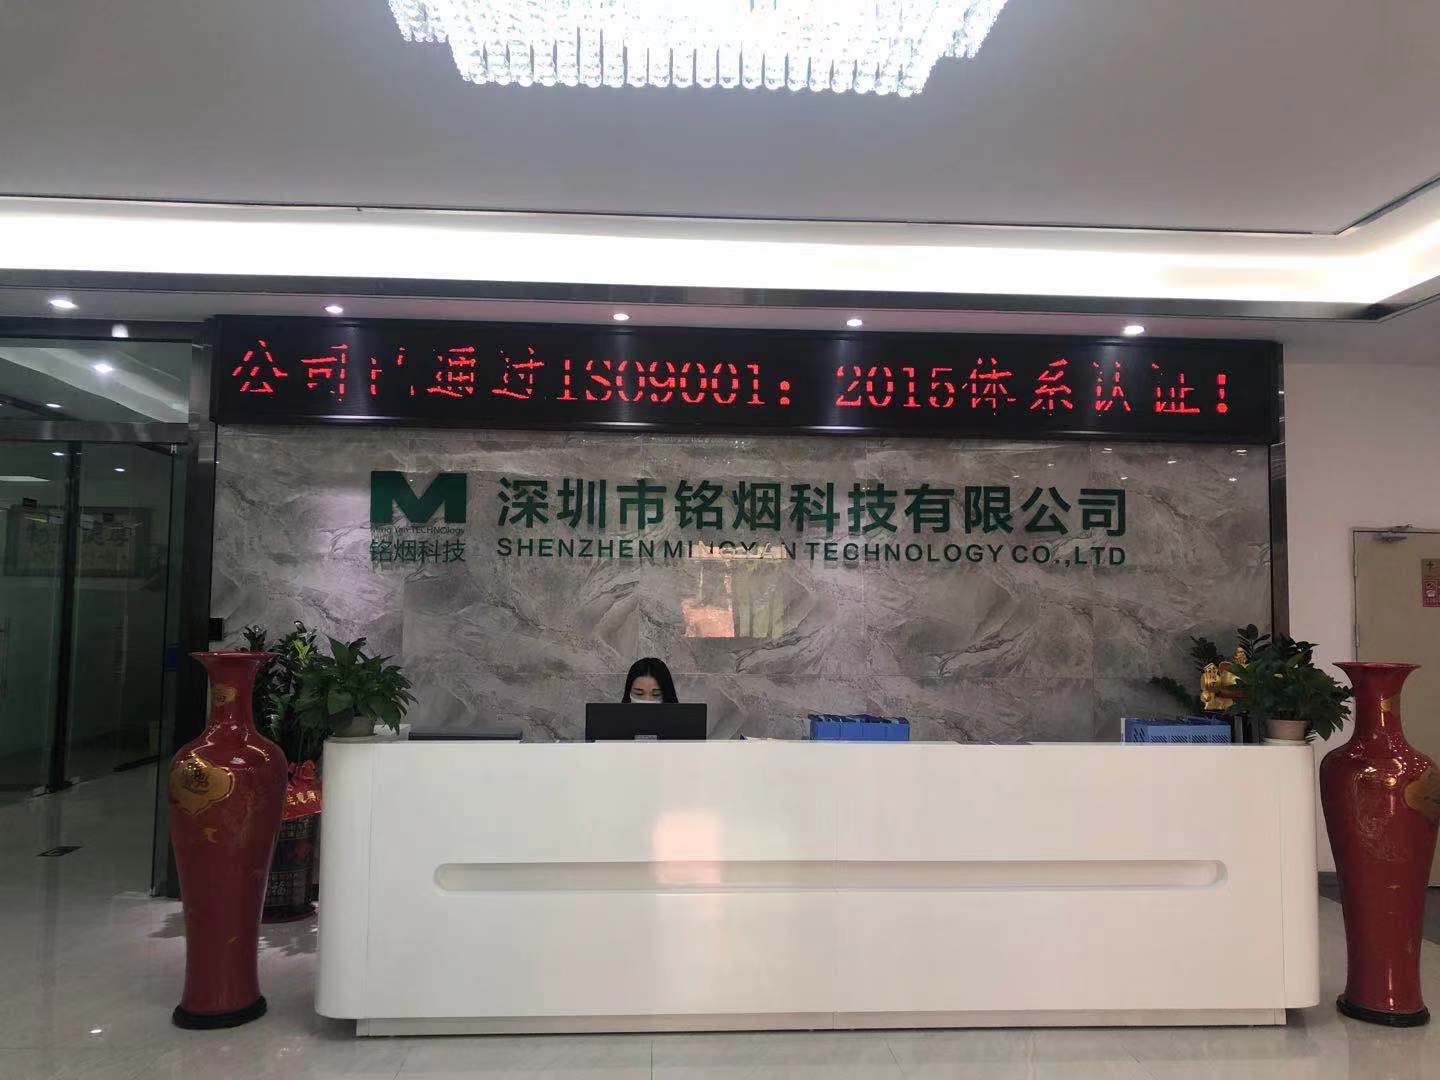 恭祝深圳市铭烟科技有限公司一次性成功通过GMP820认证